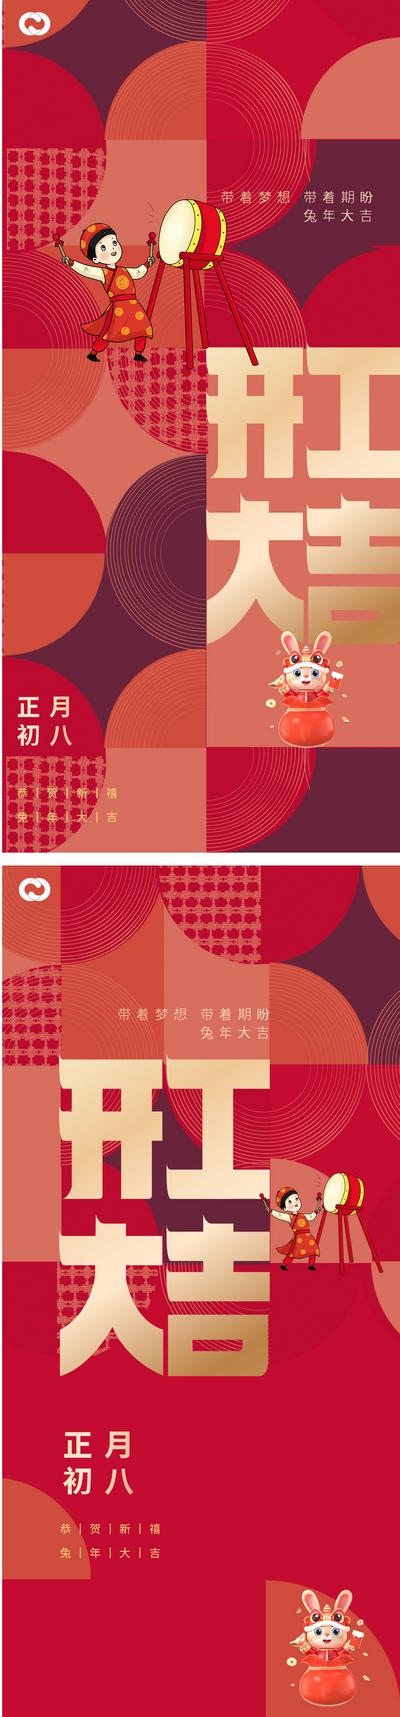 南门网 海报 中国传统节日 开工大吉 初八 生意兴隆 国潮